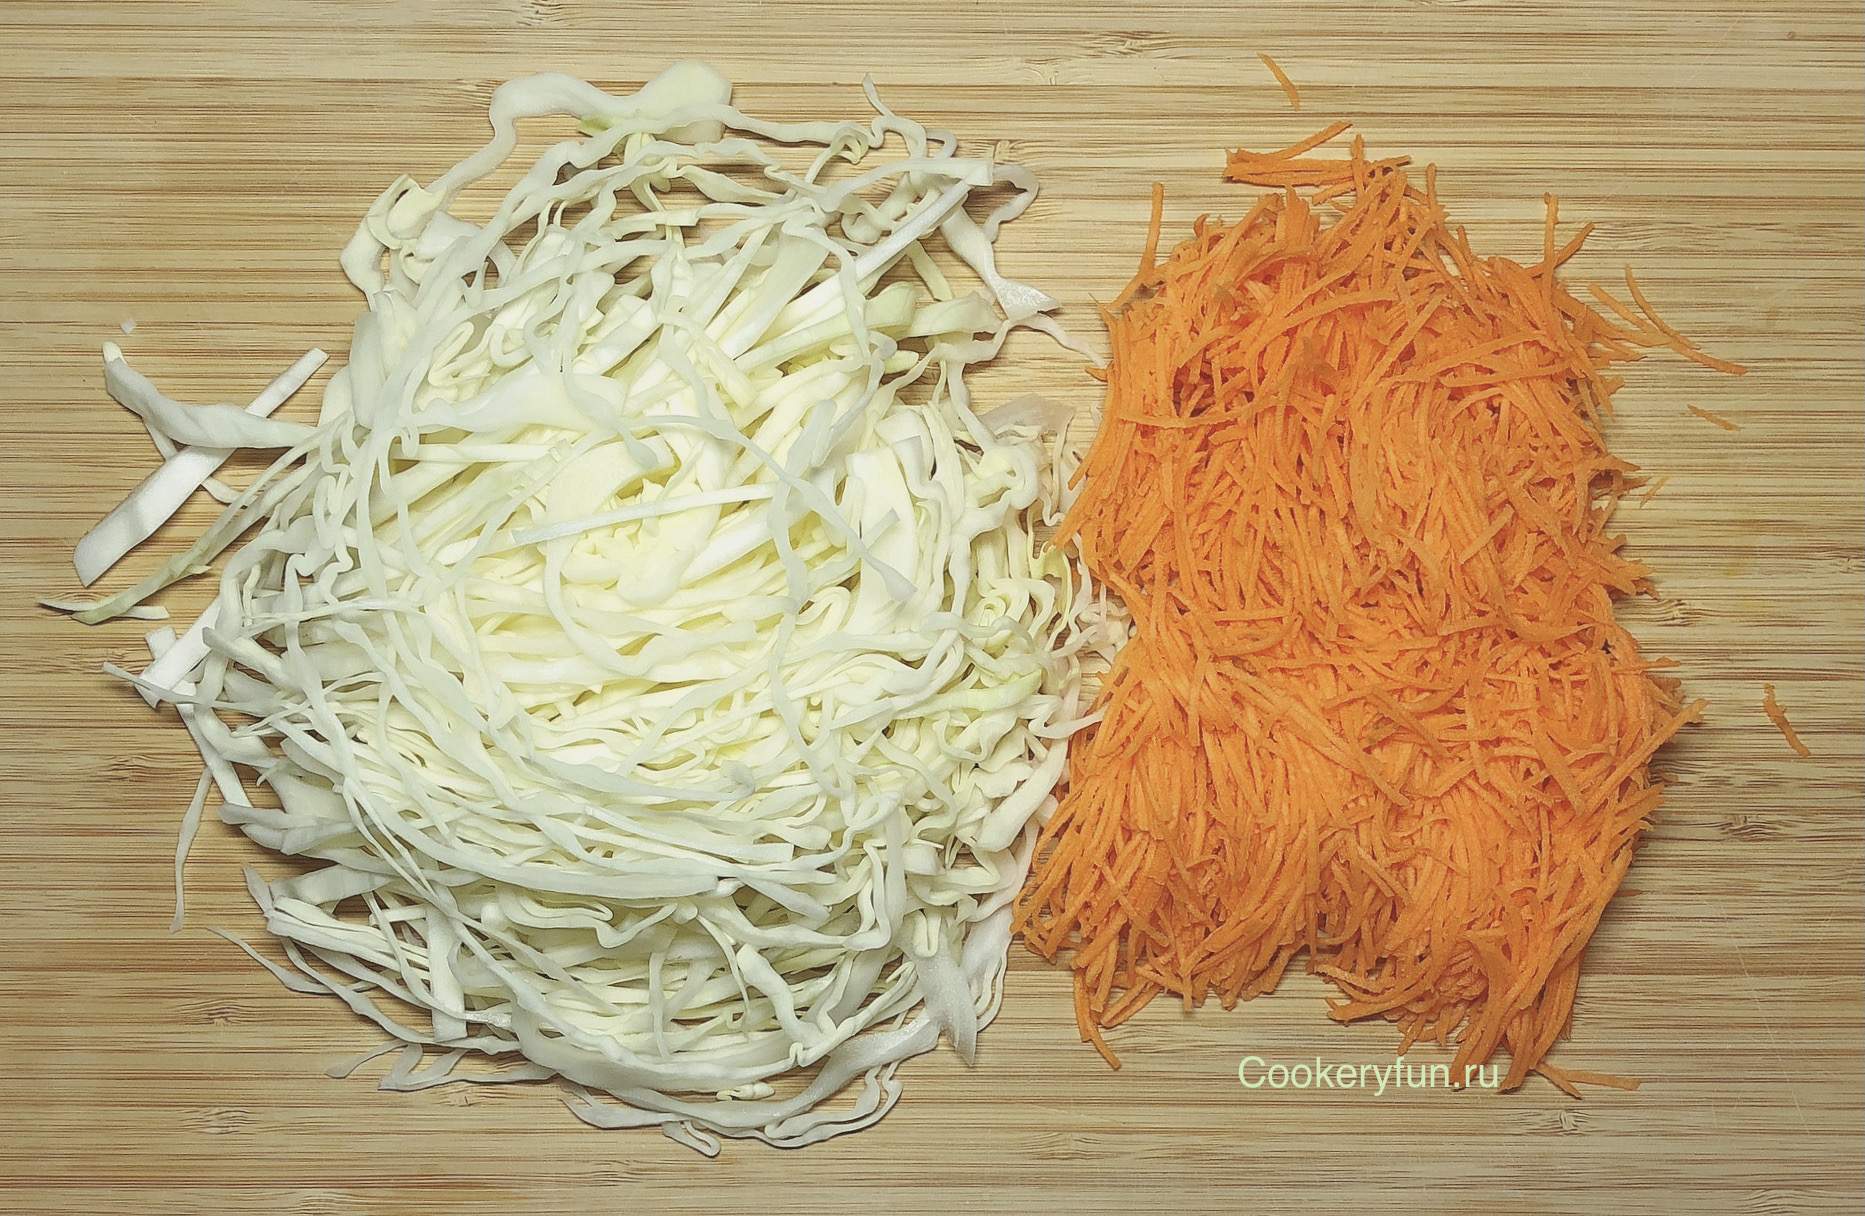 Ингредиенты для «Быстрая квашеная капуста с апельсином»: